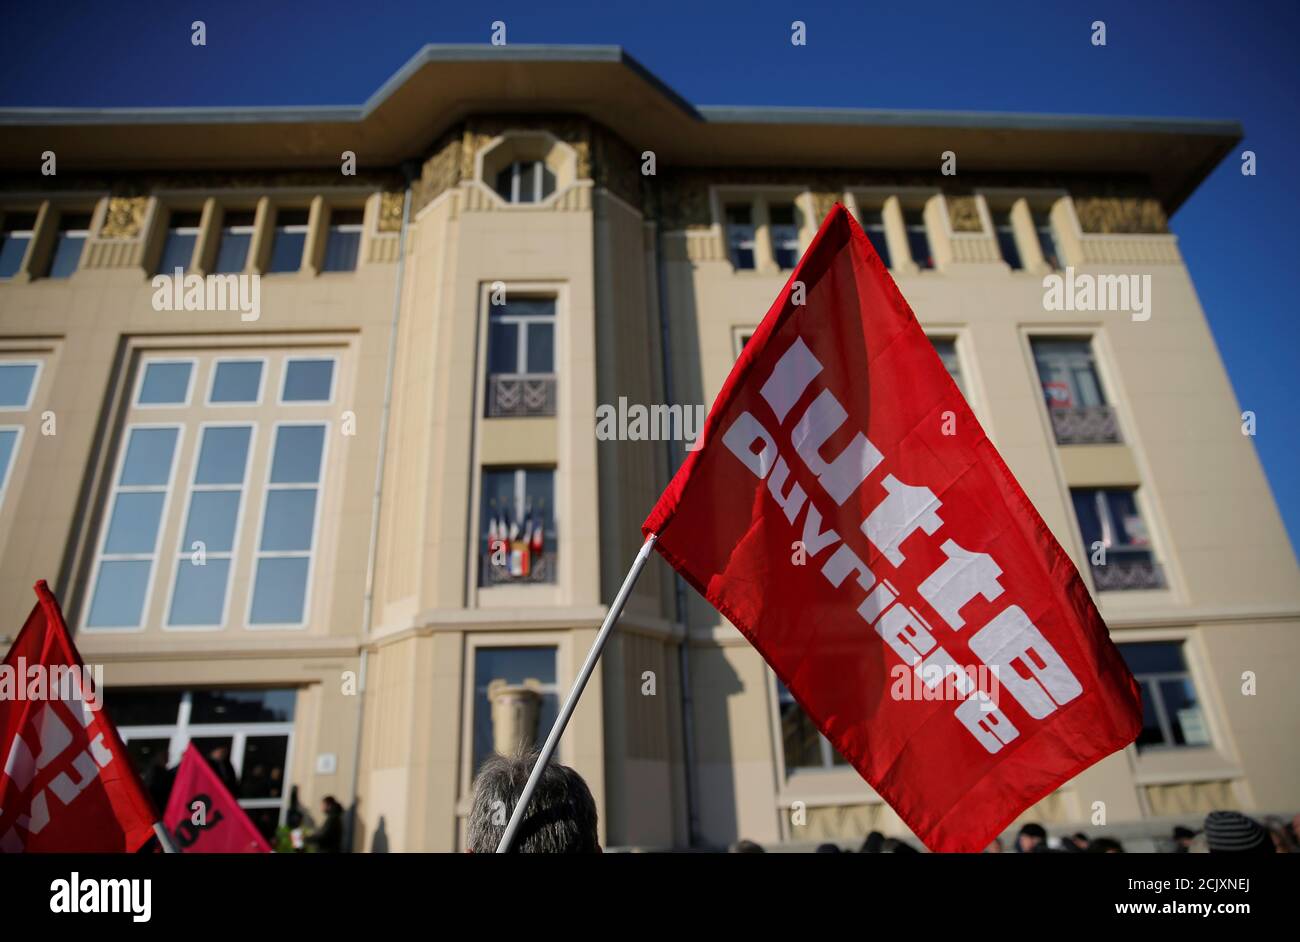 Demonstranten nehmen an einer Demonstration Teil, die von der französischen Gewerkschaft CGT in Belfort, Frankreich, am 5. Februar 2019 organisiert wurde. Die Flagge der extrem linken Lutte Ouvriere politischen Partei Frankreichs (LO) lautet "Kampf der Arbeiterklasse". Bild aufgenommen am 5. Februar 2019. REUTERS/Vincent Kessler Stockfoto